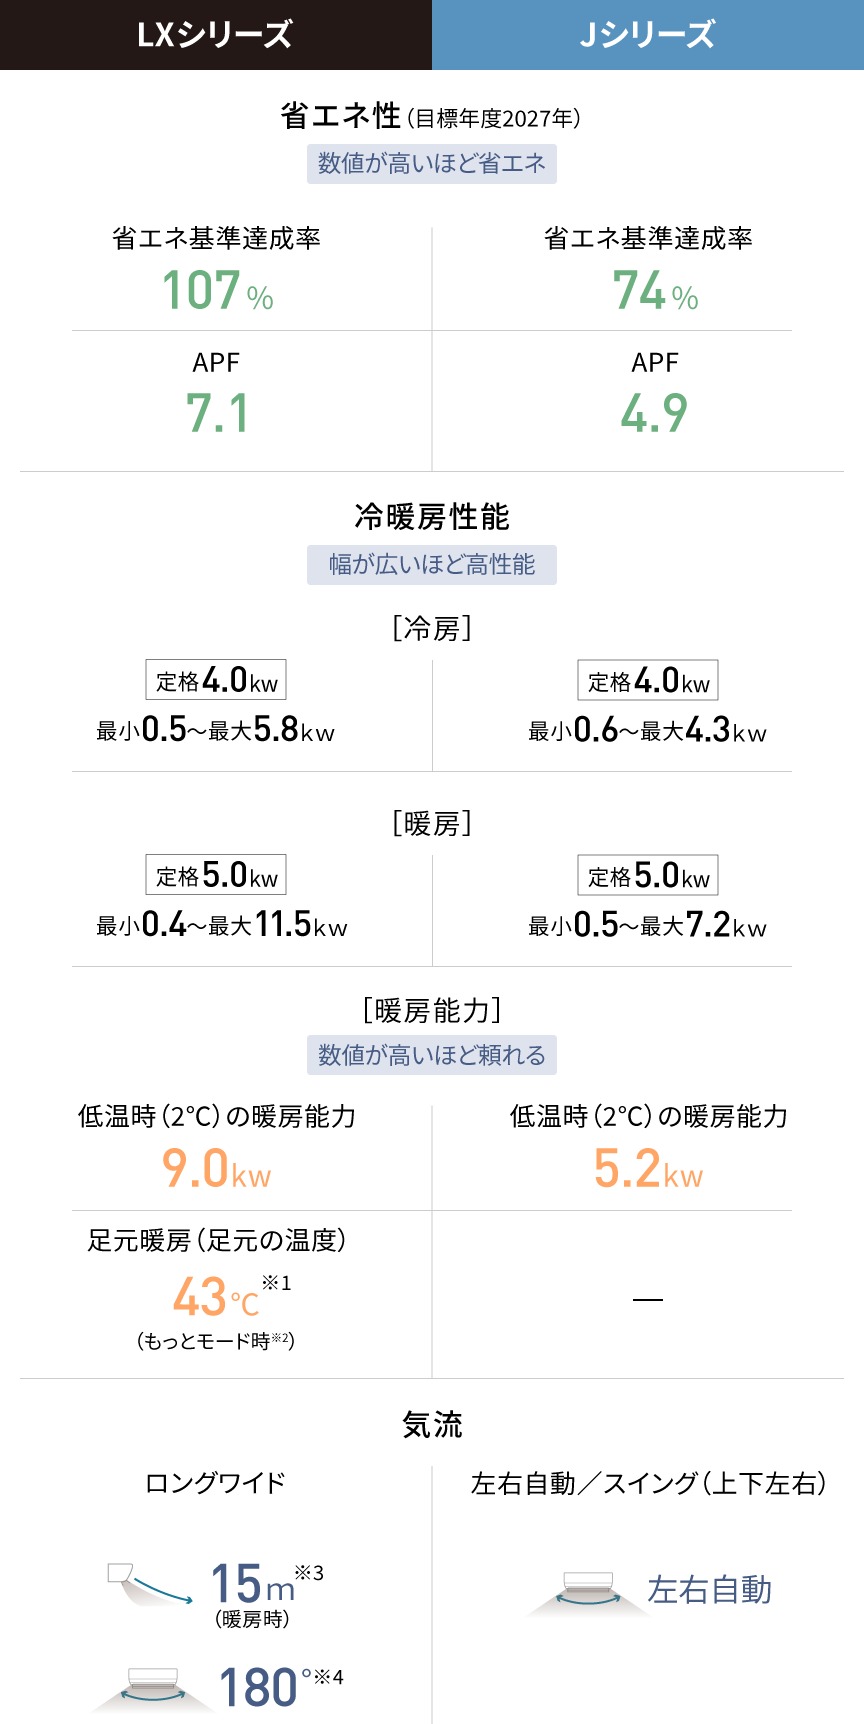 LXシリーズとJシリーズの基本性能の比較をした表です。